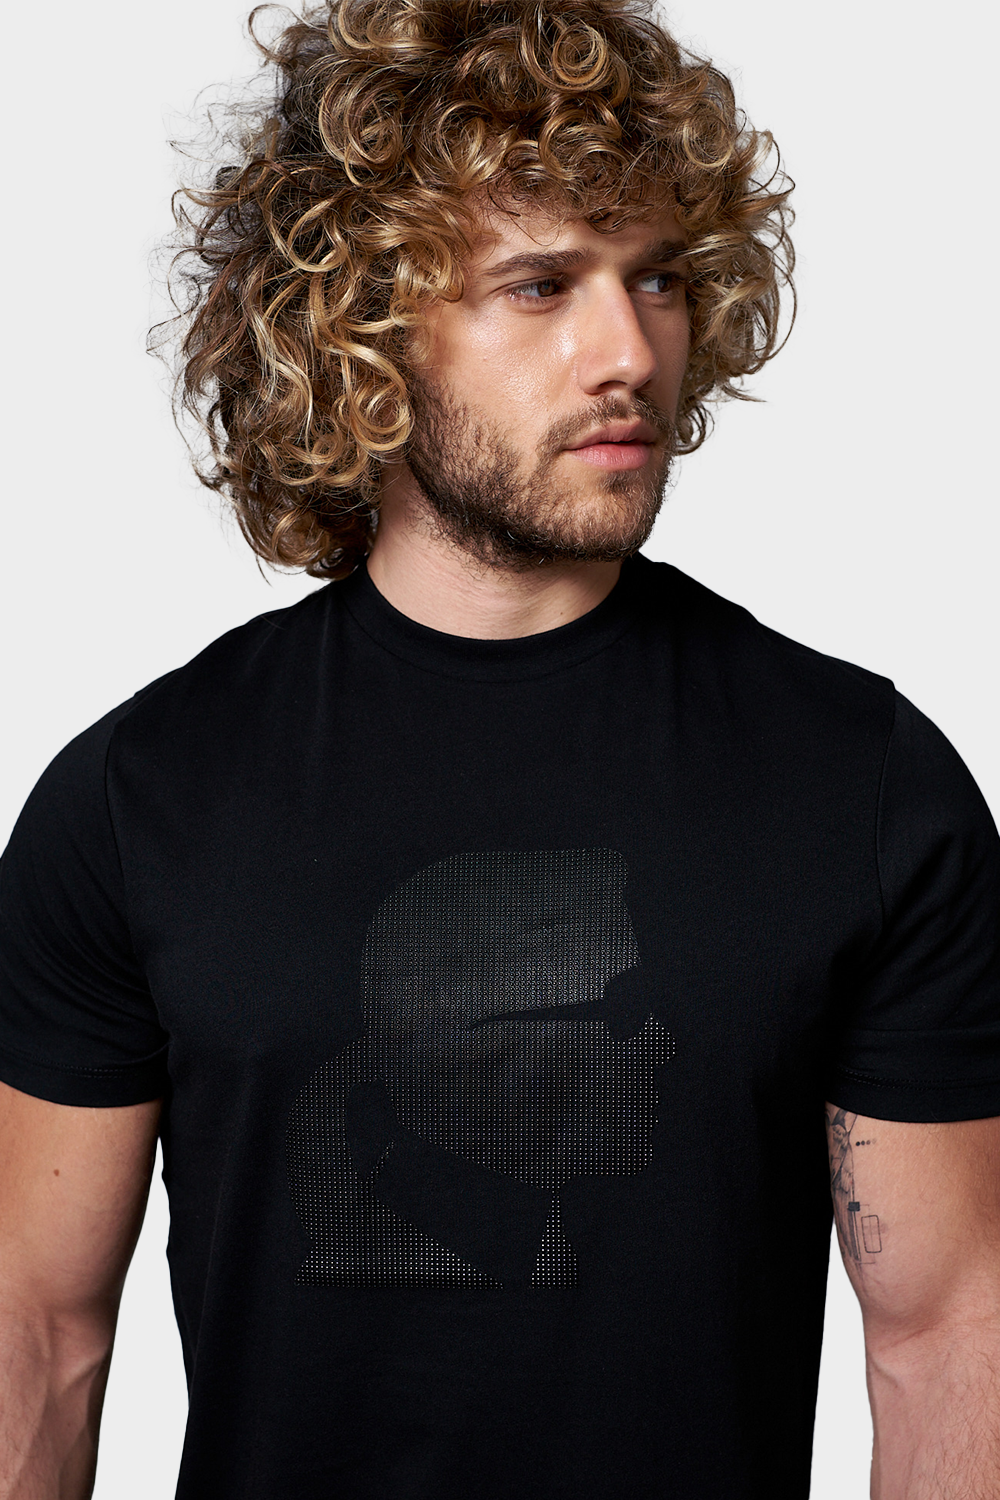 חולצת טי שירט לגברים הדפס פרופיל KARL LAGERFELD KARL LAGERFELD Vendome online | ונדום .